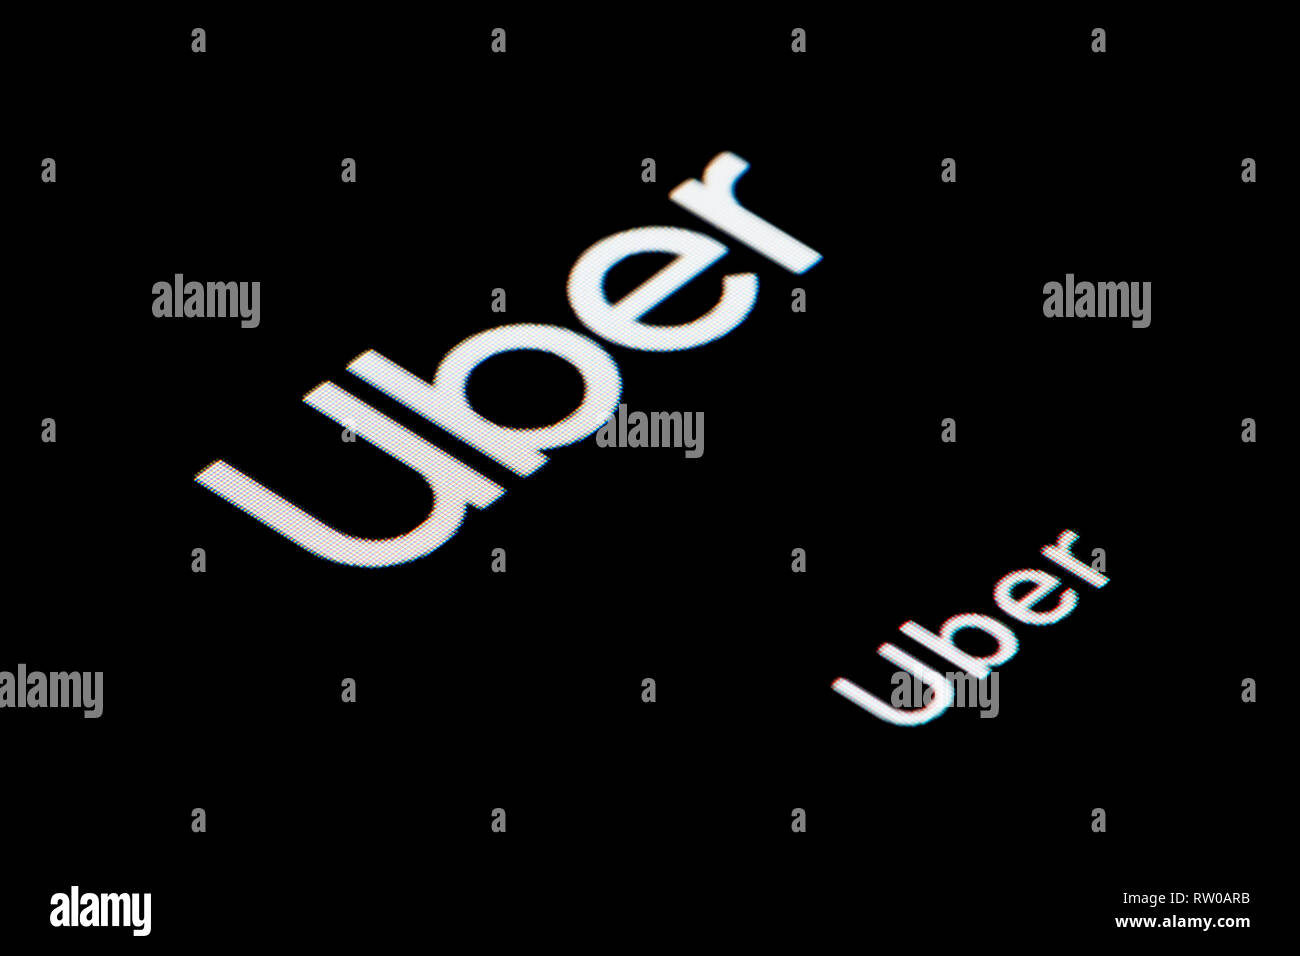 Un gros plan de l'icône de l'application Uber, comme on le voit sur l'écran d'un téléphone intelligent (usage éditorial uniquement) Banque D'Images